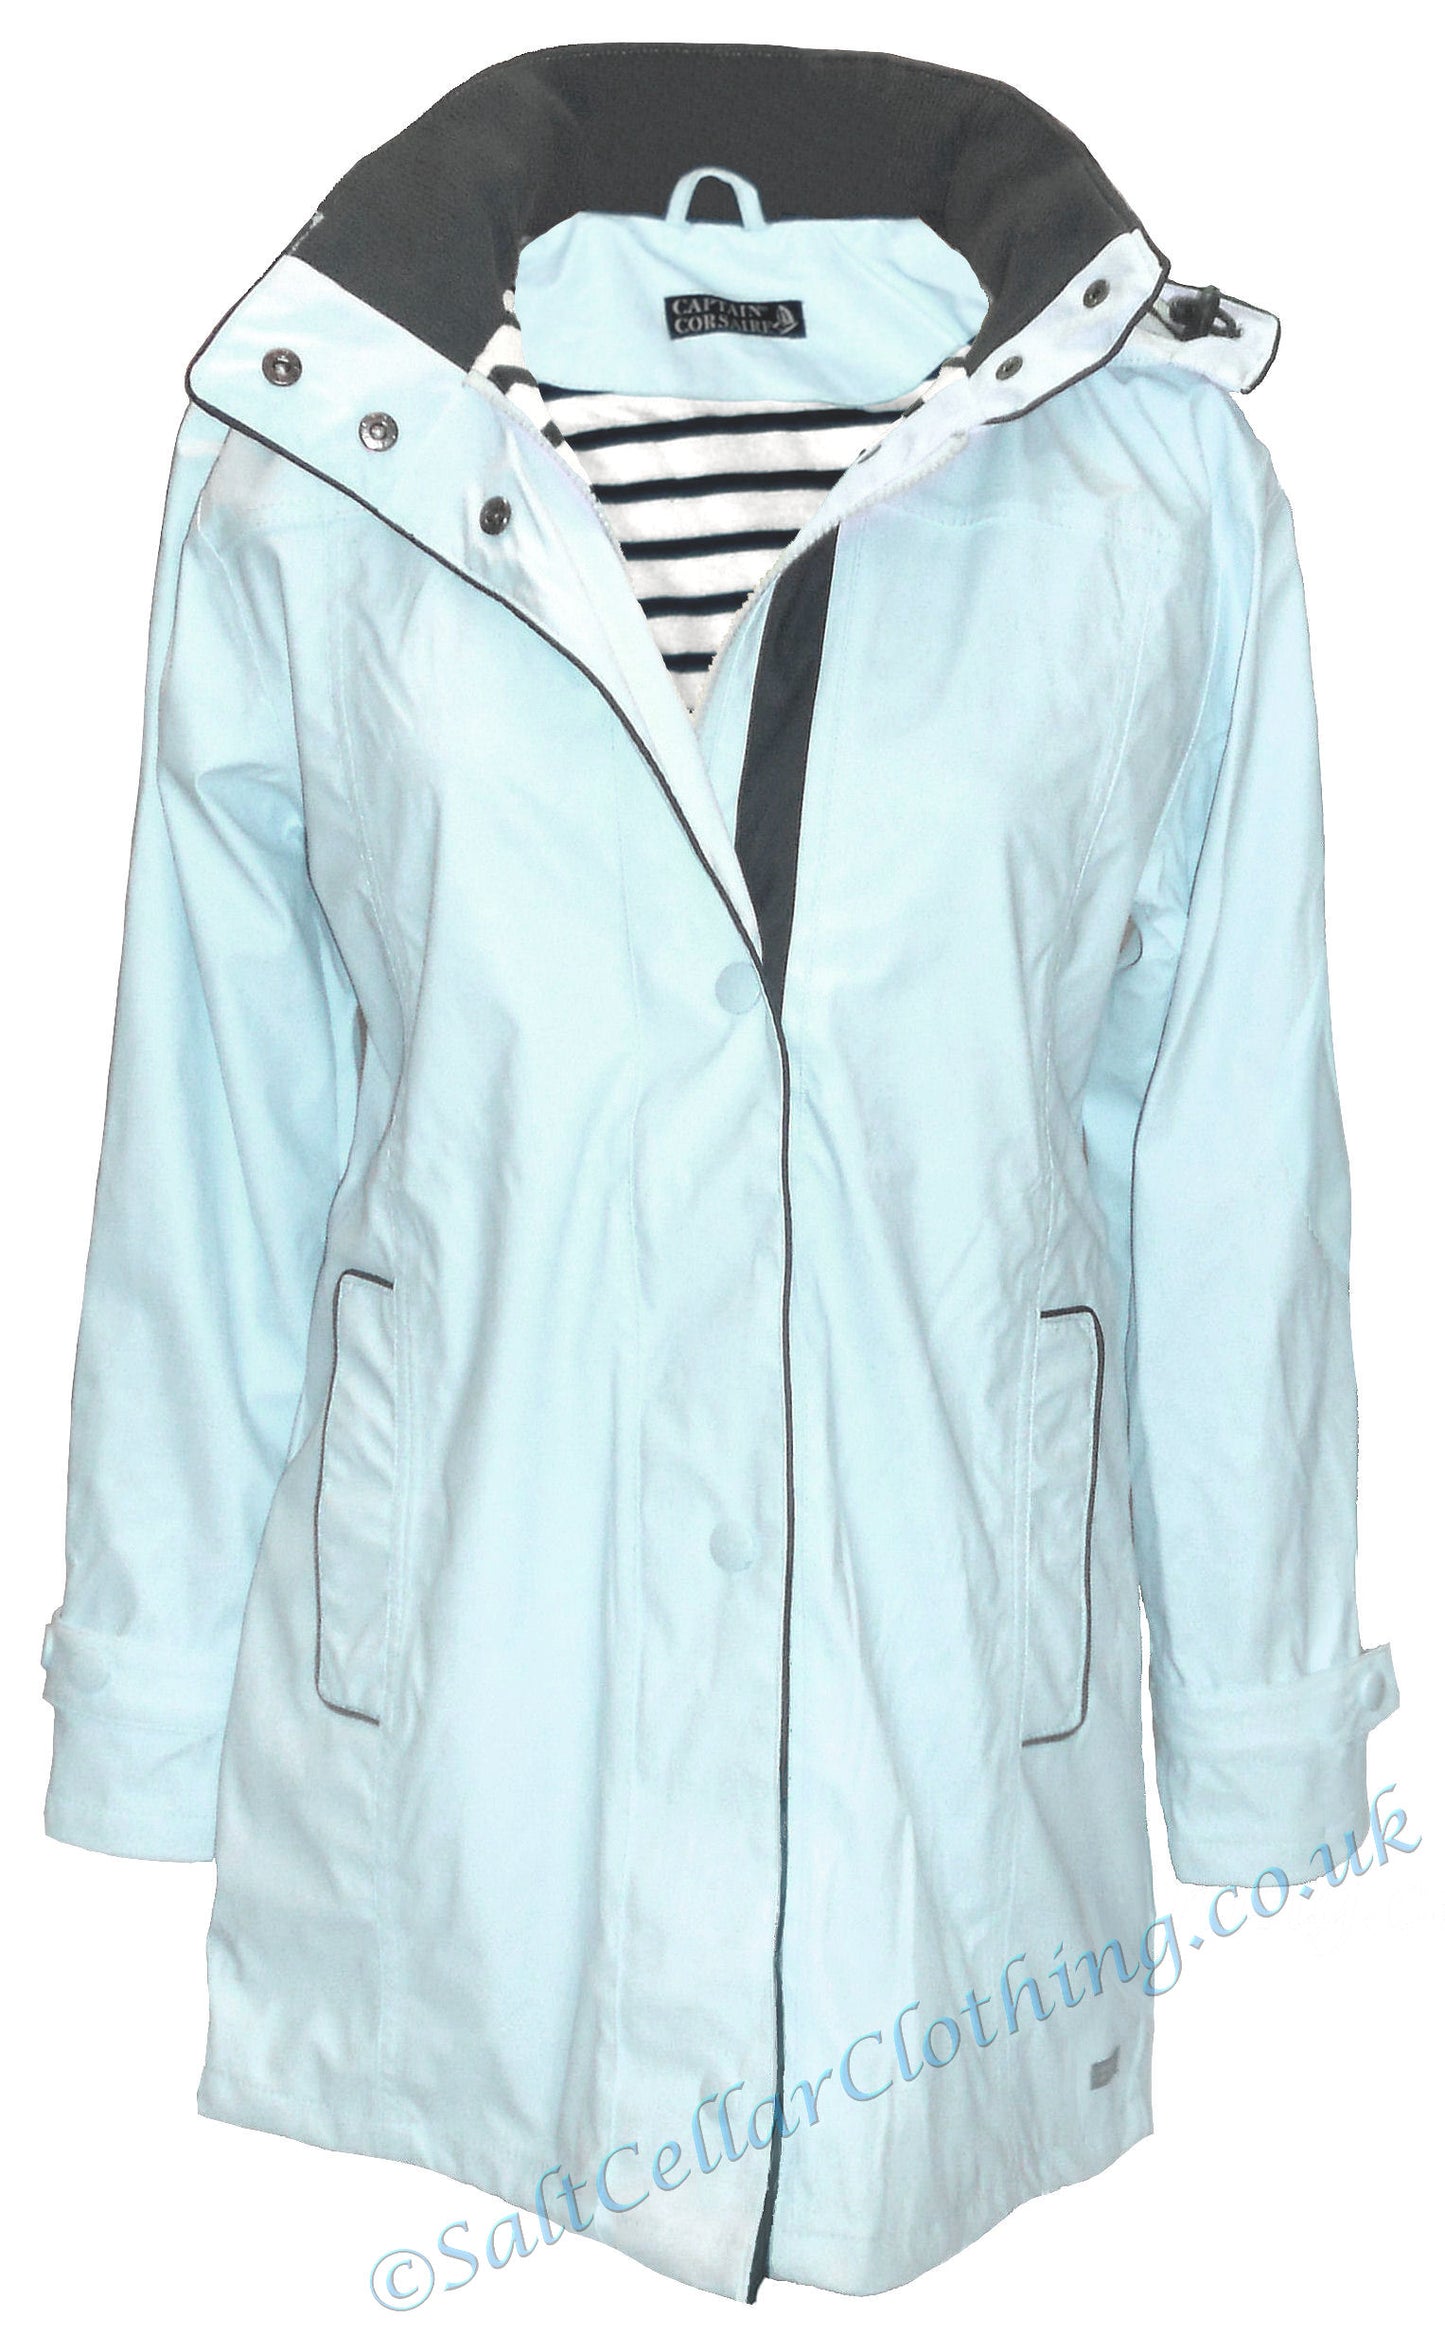 Women's Regate Ete waterproof jacket from Captain Corsaire in pale azure blue.